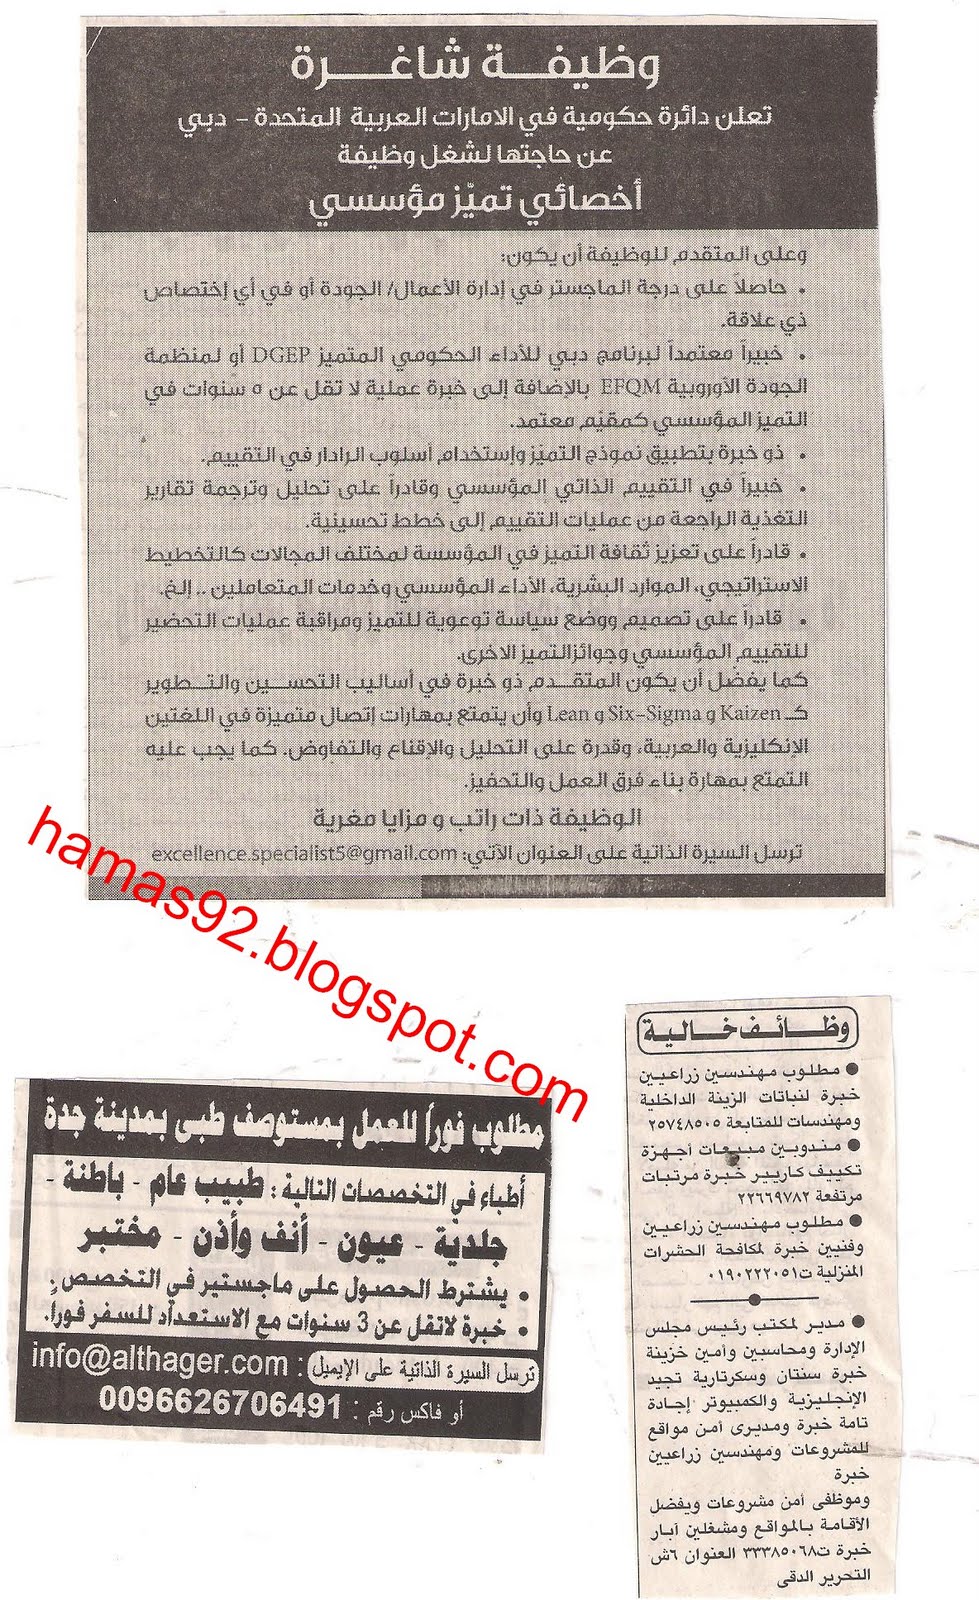 وظائف جريدة الاهرام السبت 7 مايو 2011 - وظائف الصحف المصرية مايو 2011 Picture+002